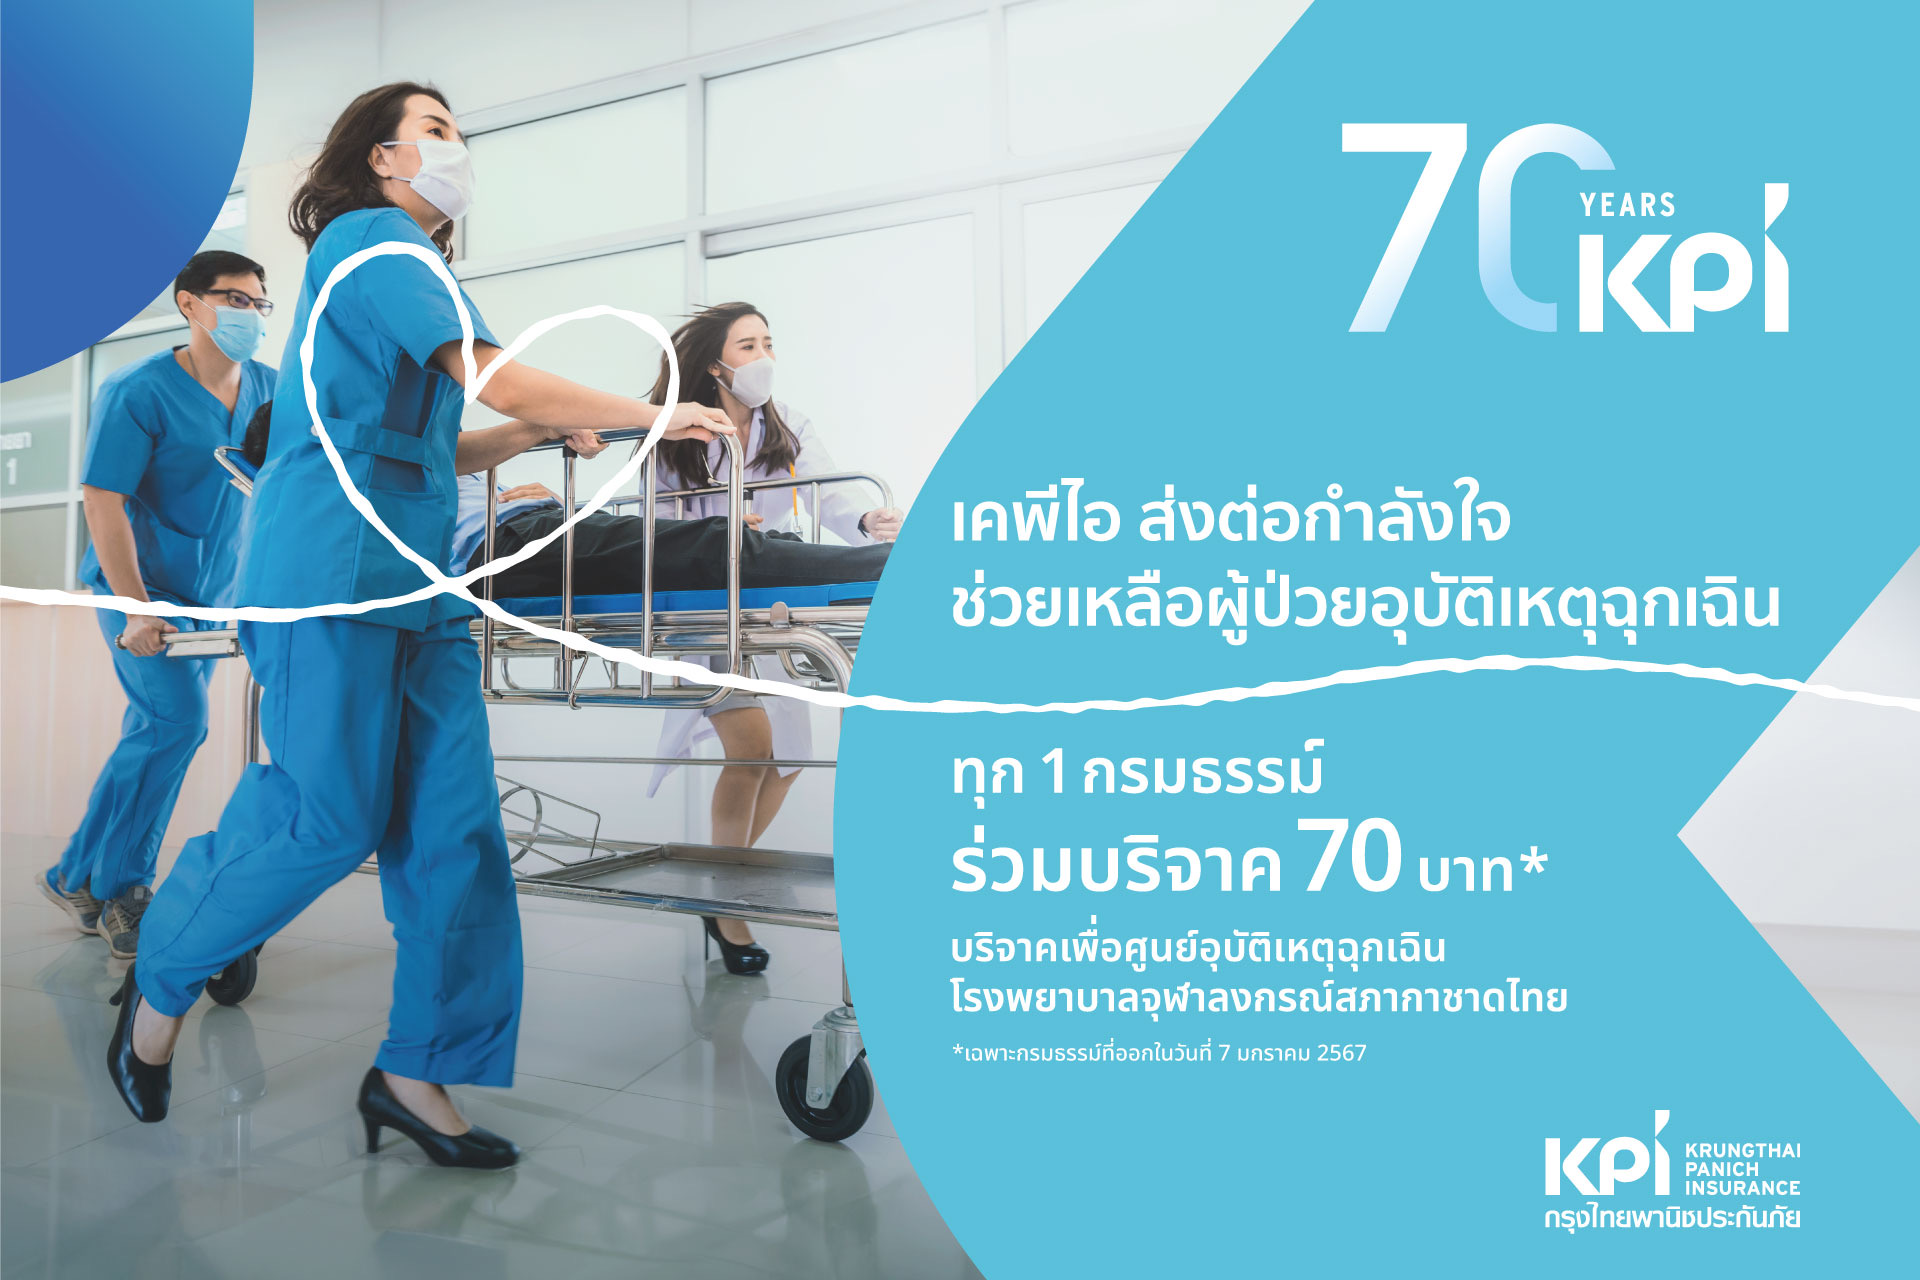 70 ปี เคพีไอ มอบเงินบริจาค 3 แสนบาท ให้กับ ศูนย์อุบัติเหตุฉุกเฉิน โรงพยาบาลจุฬาลงกรณ์ สภากาชาดไทย ช่วยเหลือผู้ป่วยอุบัติเหตุฉุกเฉิน